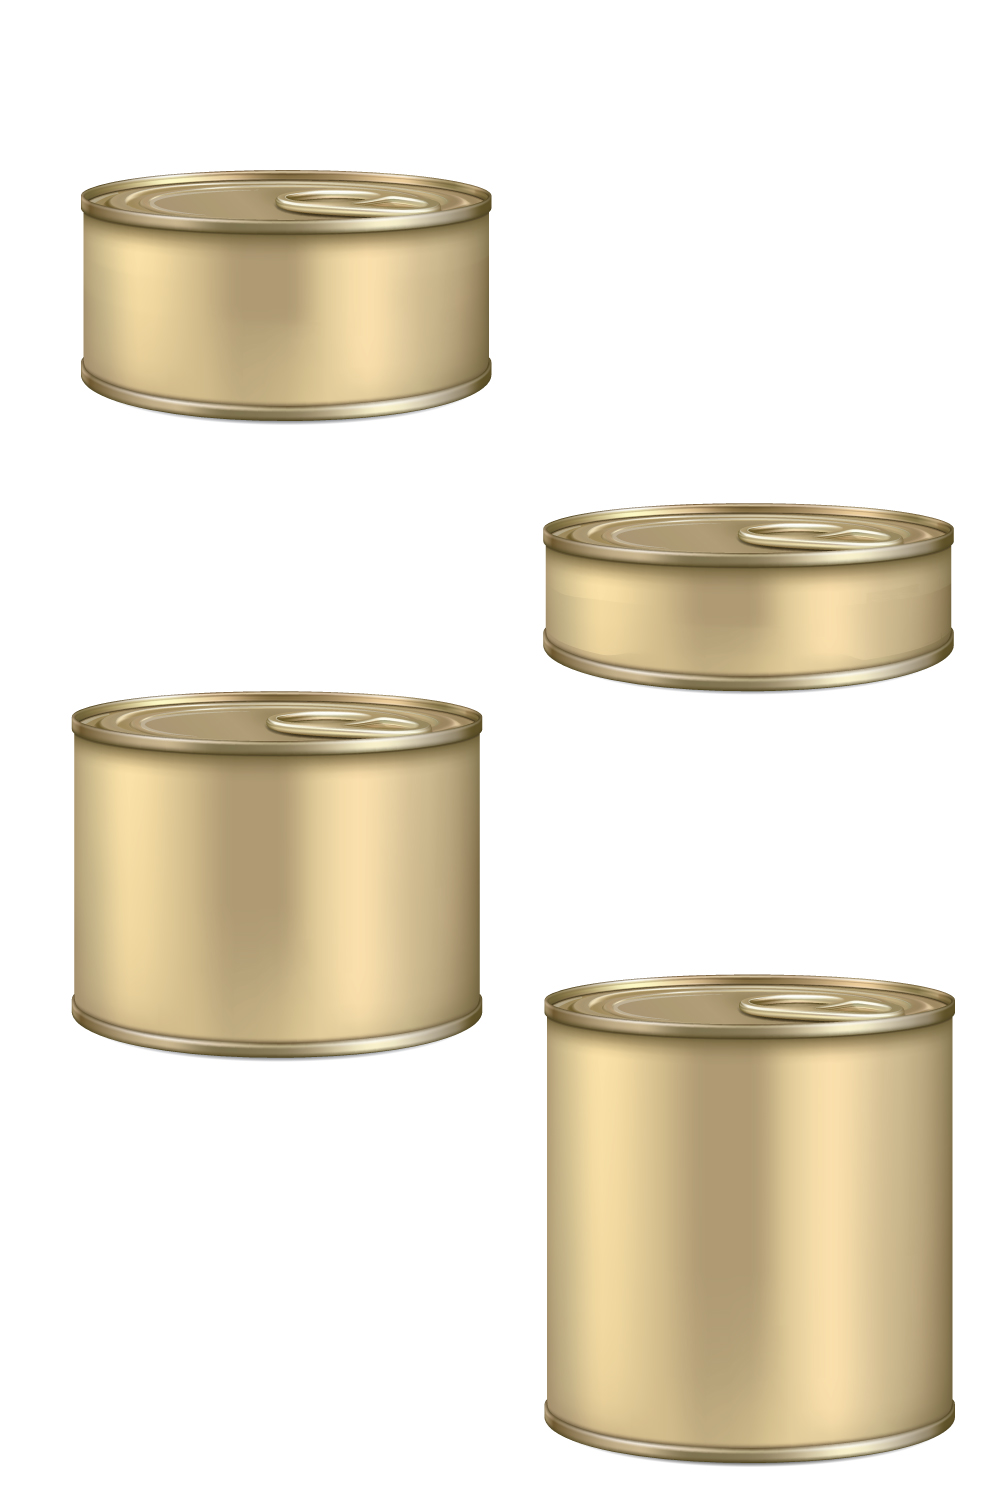 Tin pot label design mockup EPS file pinterest preview image.